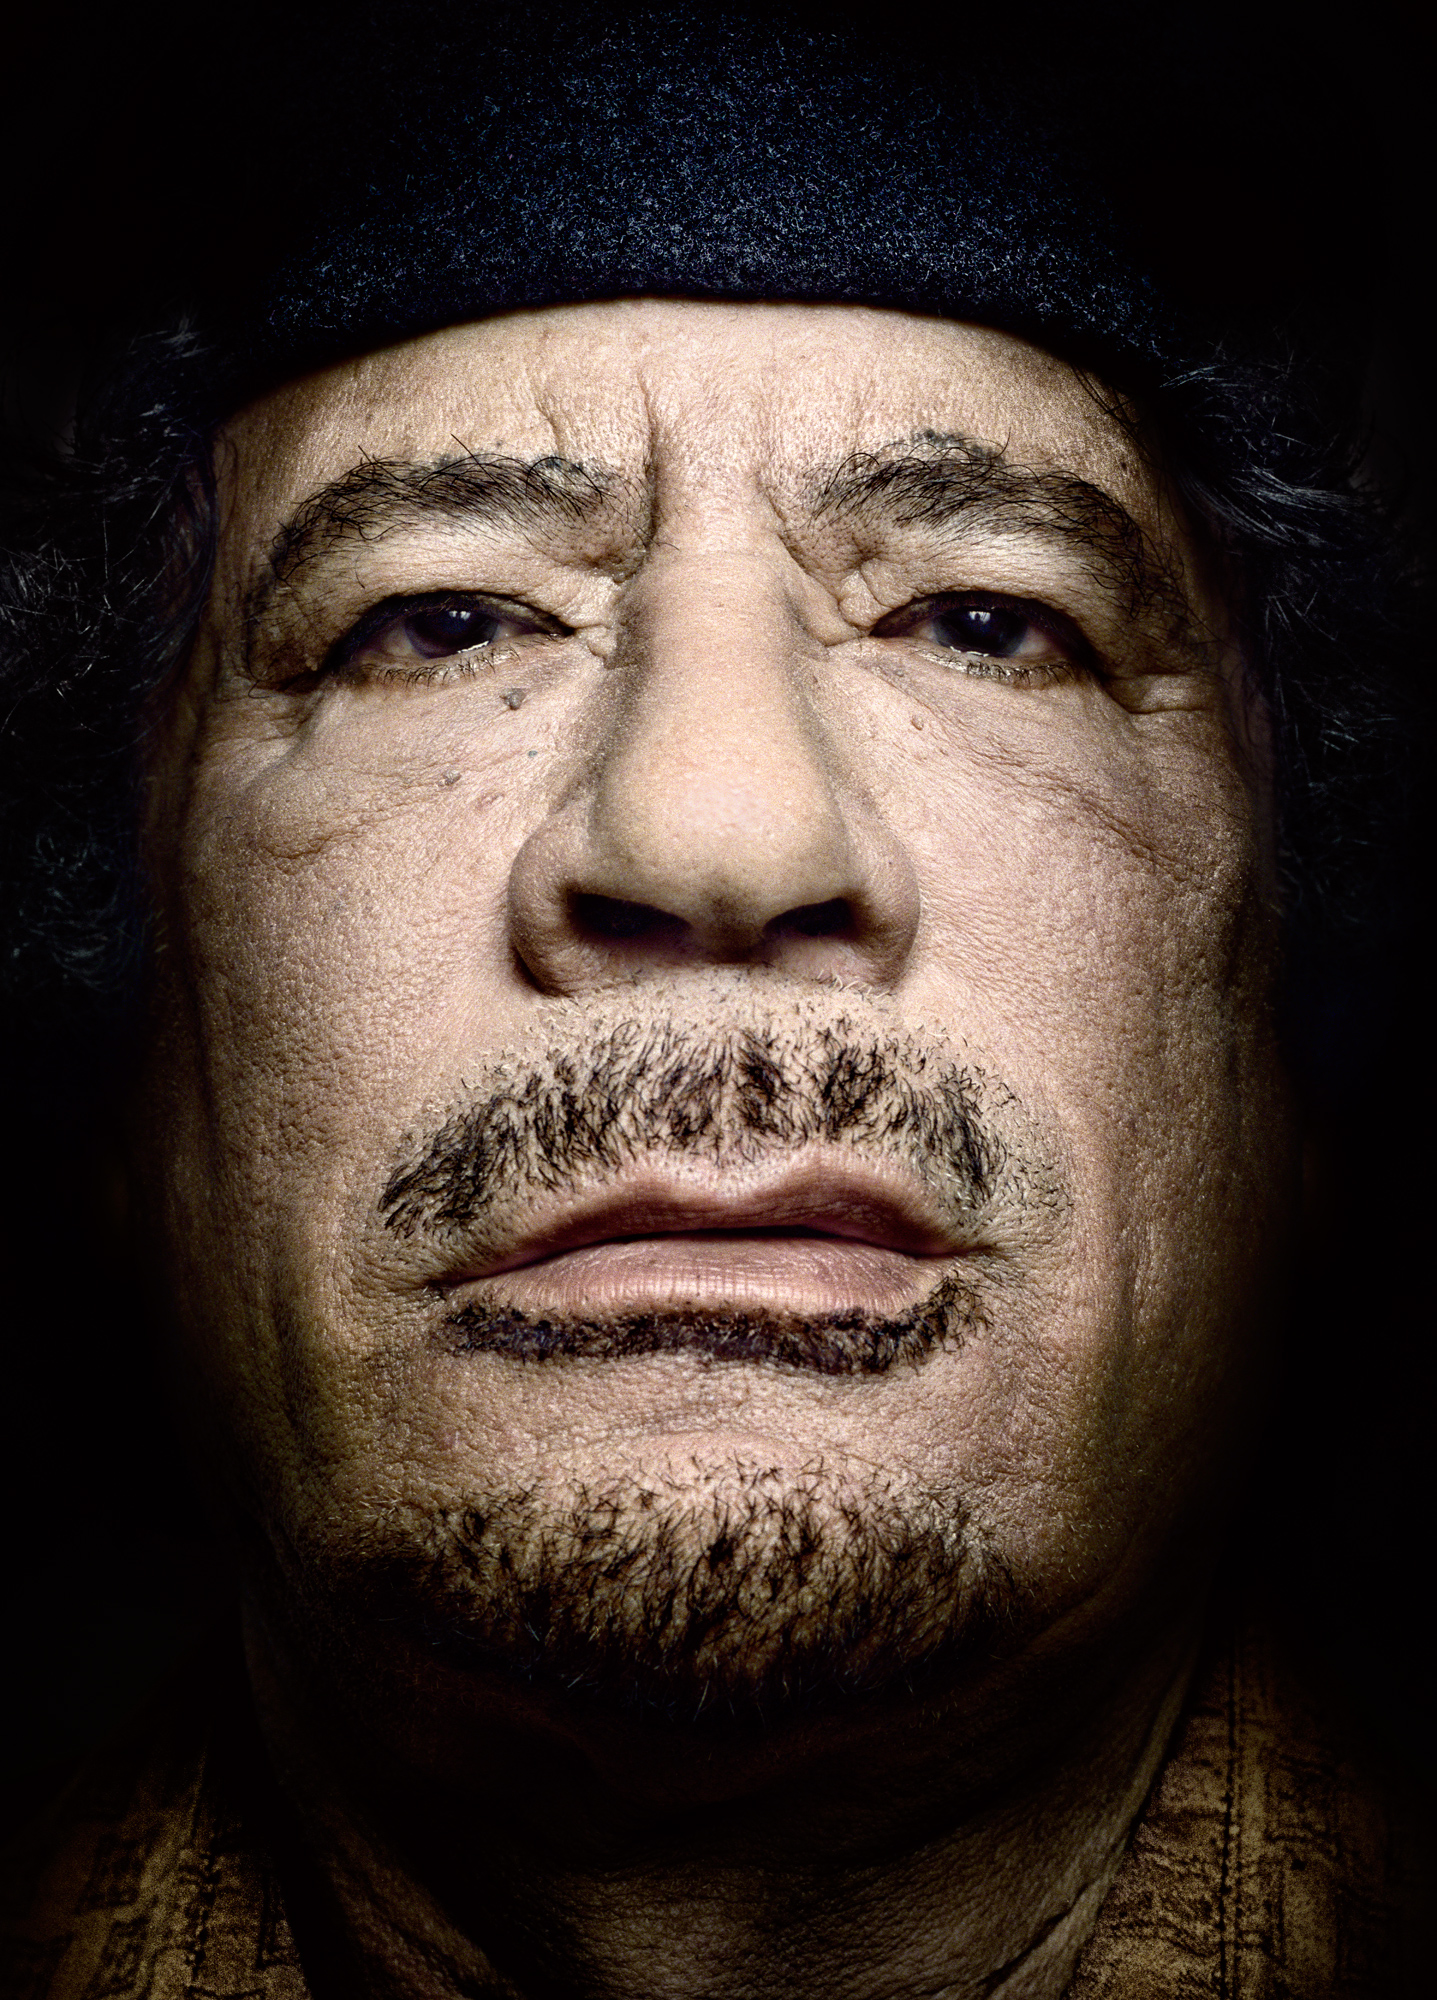 Portrait of Libyan leader Muammar Gaddafi, by Platon